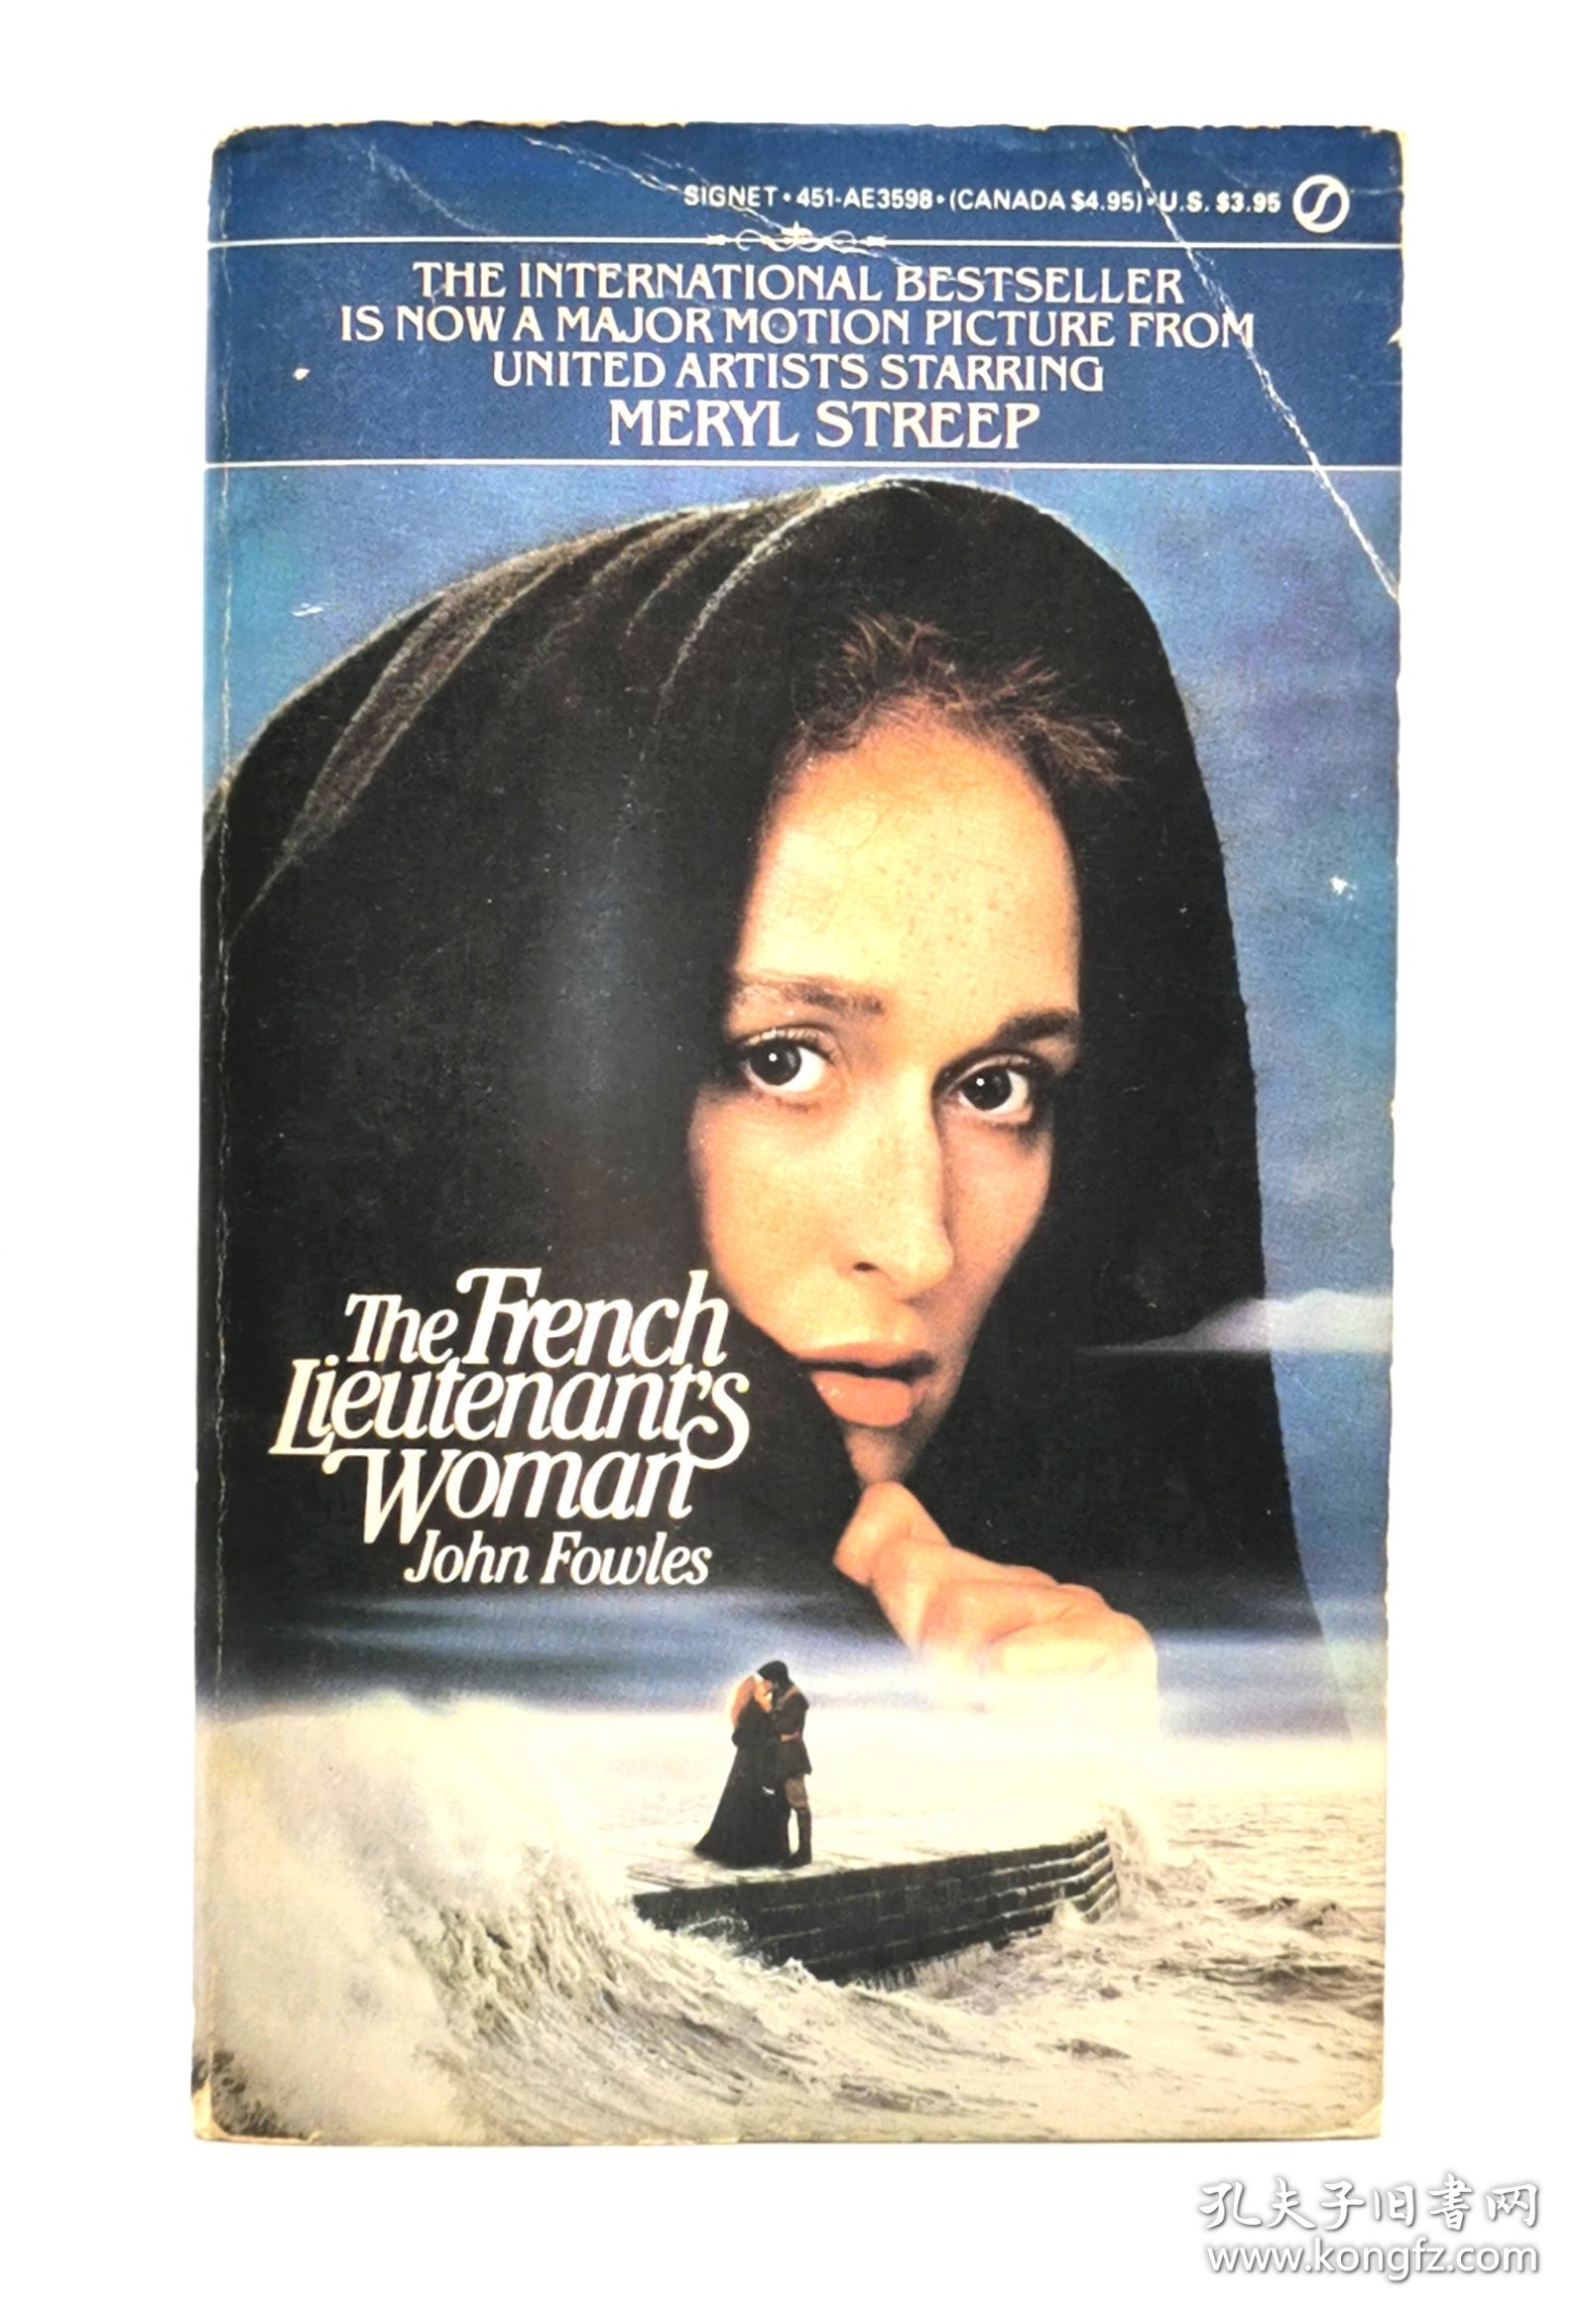 1981年版 约翰·福尔斯《法国中尉的女人》 The French Lieutenant's Woman by John Fowles（英国文学）英文原版书